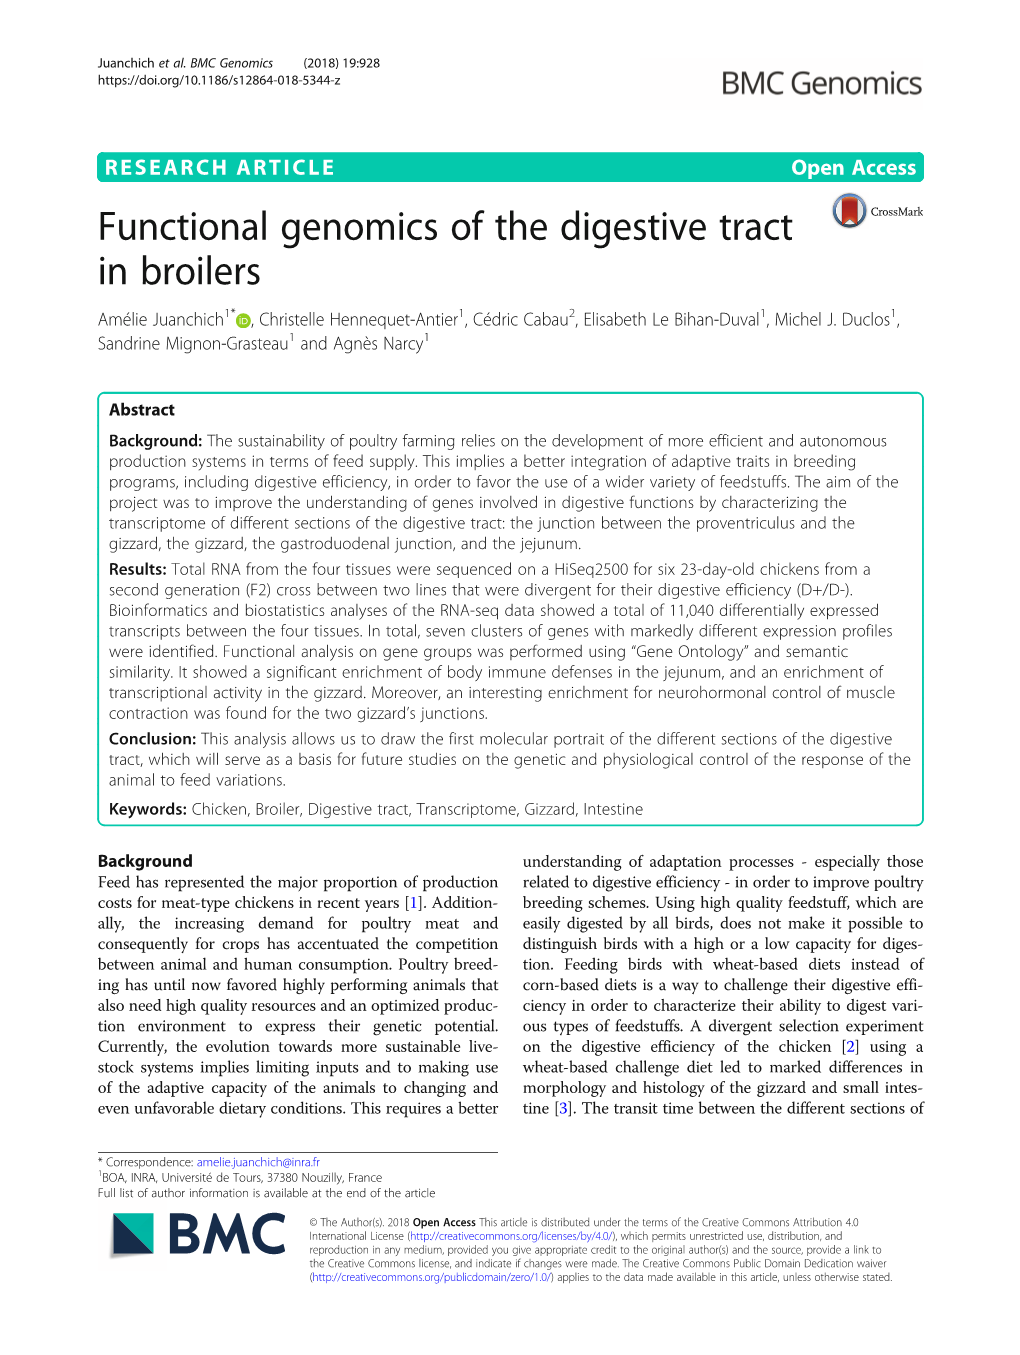 Functional Genomics of the Digestive Tract in Broilers Amélie Juanchich1* , Christelle Hennequet-Antier1, Cédric Cabau2, Elisabeth Le Bihan-Duval1, Michel J